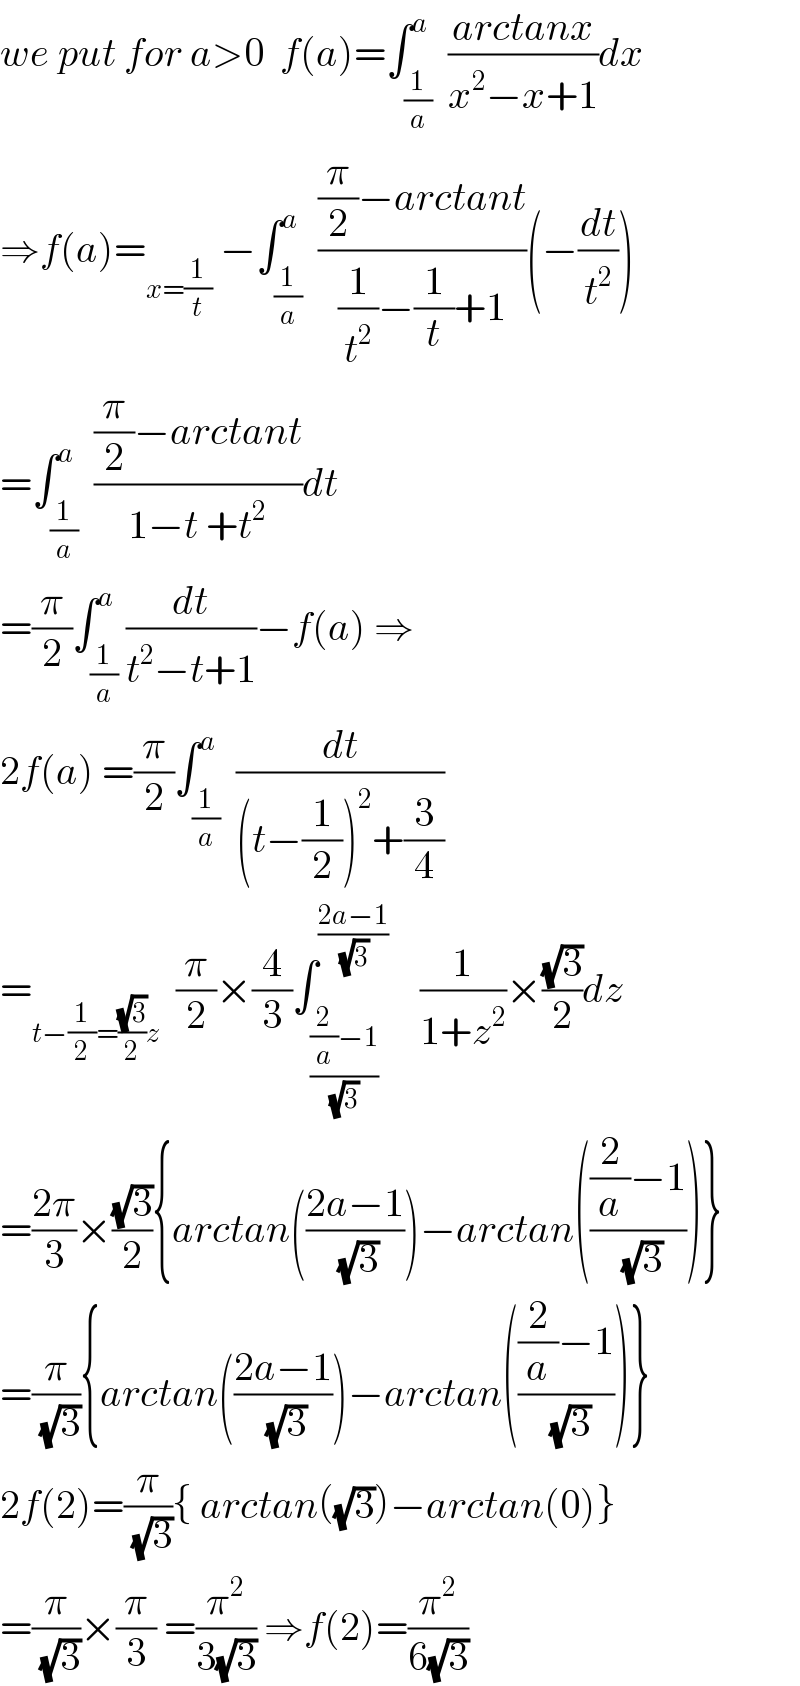 we put for a>0  f(a)=∫_(1/a) ^a  ((arctanx)/(x^2 −x+1))dx  ⇒f(a)=_(x=(1/t))  −∫_(1/a) ^a  (((π/2)−arctant)/((1/t^2 )−(1/t)+1))(−(dt/t^2 ))  =∫_(1/a) ^a  (((π/2)−arctant)/(1−t +t^2 ))dt  =(π/2)∫_(1/a) ^a (dt/(t^2 −t+1))−f(a) ⇒  2f(a) =(π/2)∫_(1/a) ^a  (dt/((t−(1/2))^2 +(3/4)))  =_(t−(1/2)=((√3)/2)z)   (π/2)×(4/3)∫_(((2/a)−1)/( (√3))) ^((2a−1)/( (√3)))     (1/(1+z^2 ))×((√3)/2)dz  =((2π)/3)×((√3)/2){arctan(((2a−1)/( (√3))))−arctan((((2/a)−1)/( (√3))))}  =(π/( (√3))){arctan(((2a−1)/( (√3))))−arctan((((2/a)−1)/( (√3))))}  2f(2)=(π/( (√3))){ arctan((√3))−arctan(0)}  =(π/( (√3)))×(π/3) =(π^2 /(3(√3))) ⇒f(2)=(π^2 /(6(√3)))  